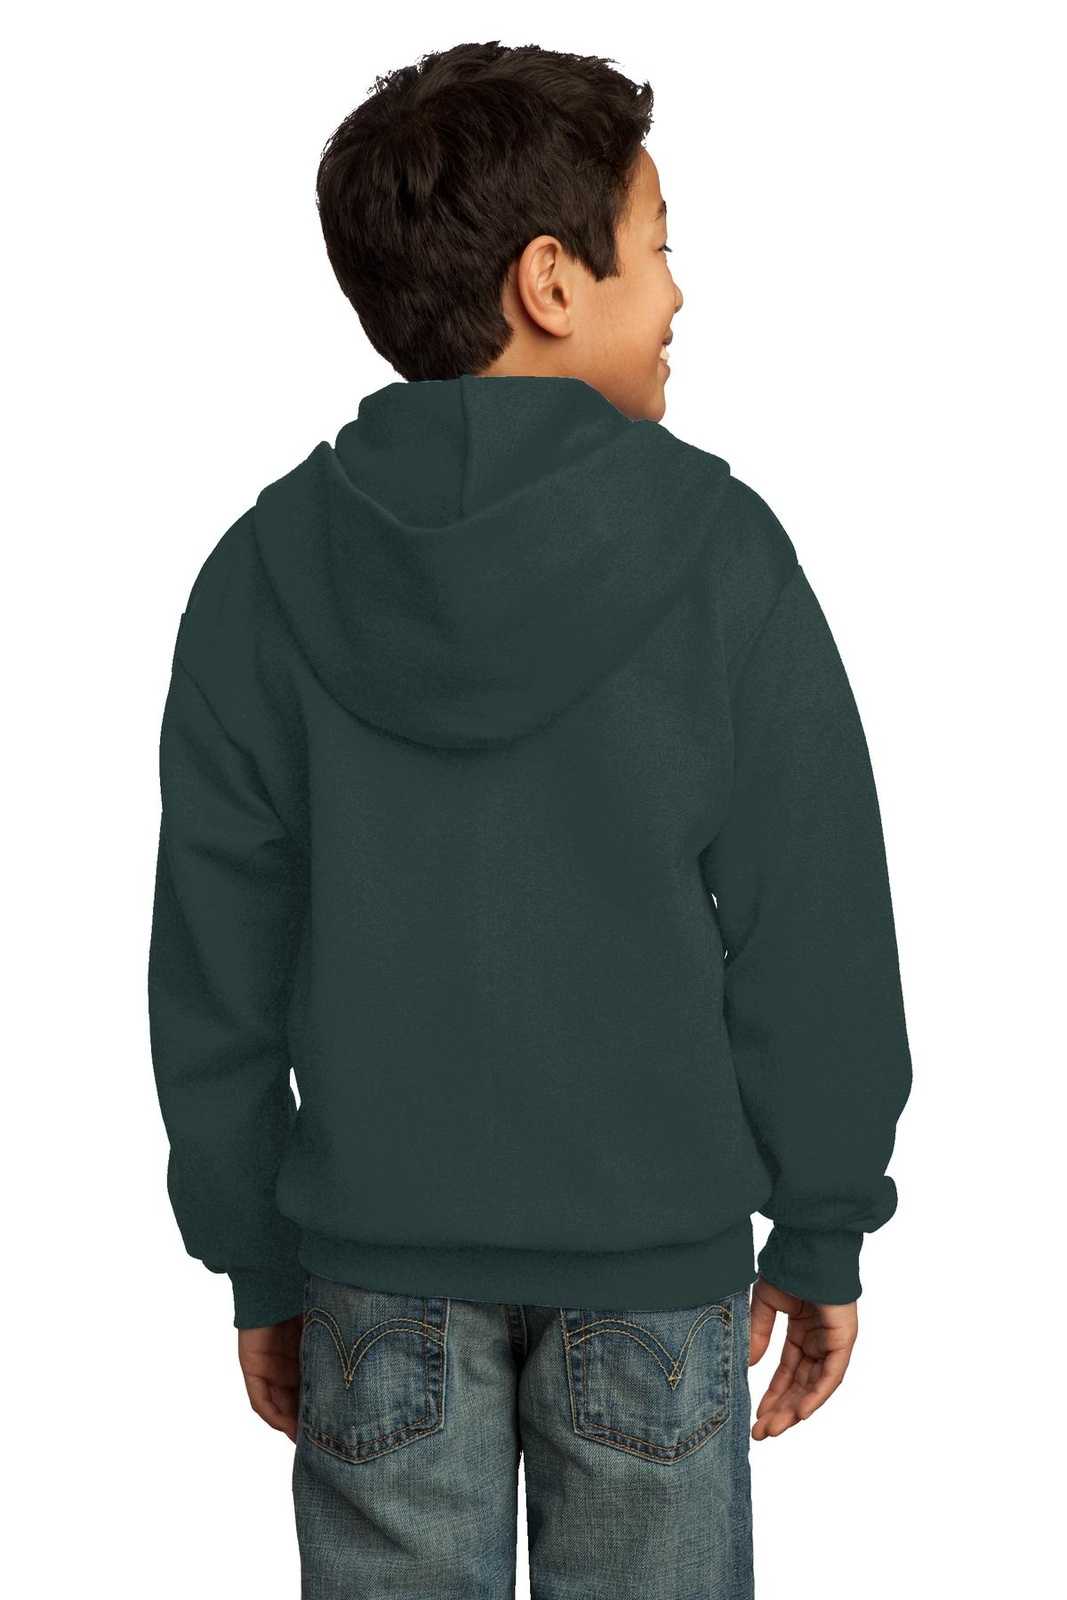 Port & Company PC90YZH Youth Core Fleece Full-Zip Hooded Sweatshirt - Dark Green - HIT a Double - 1